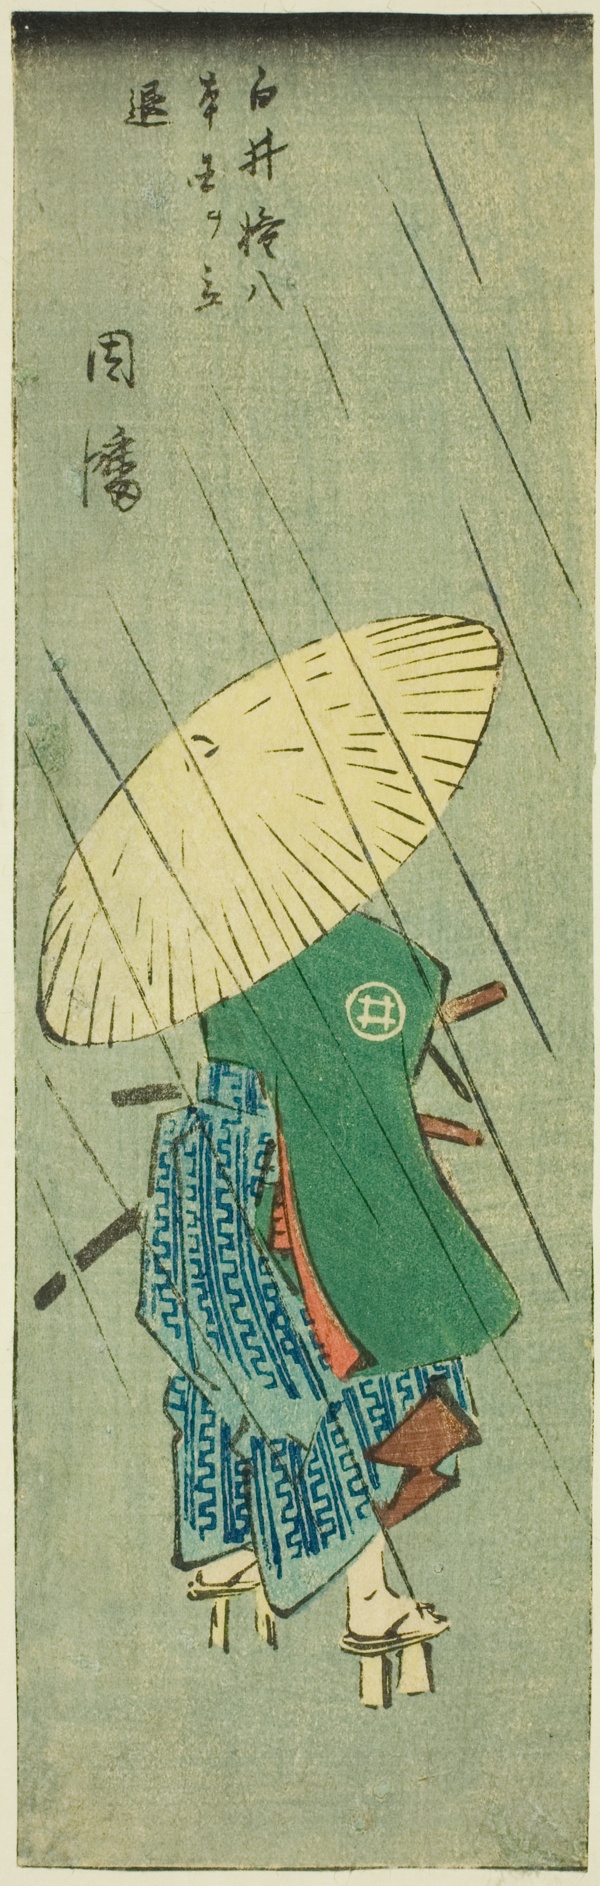 Inaba: Shirai Gonpachi Leaves His Home (Shirai Gonpachi hongoku o tachinoku, Inaba), section of sheet no. 12 from the series 